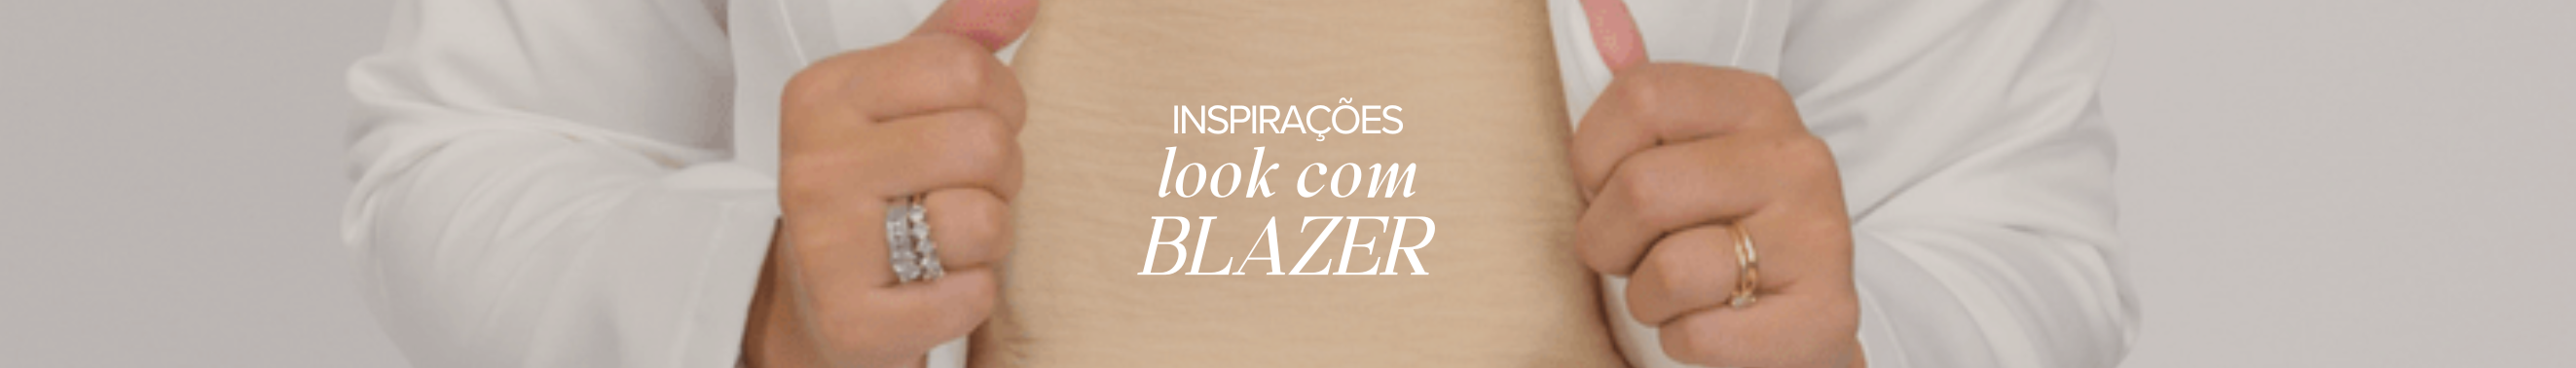 Inspirações de looks: Blazer Alfaitaria